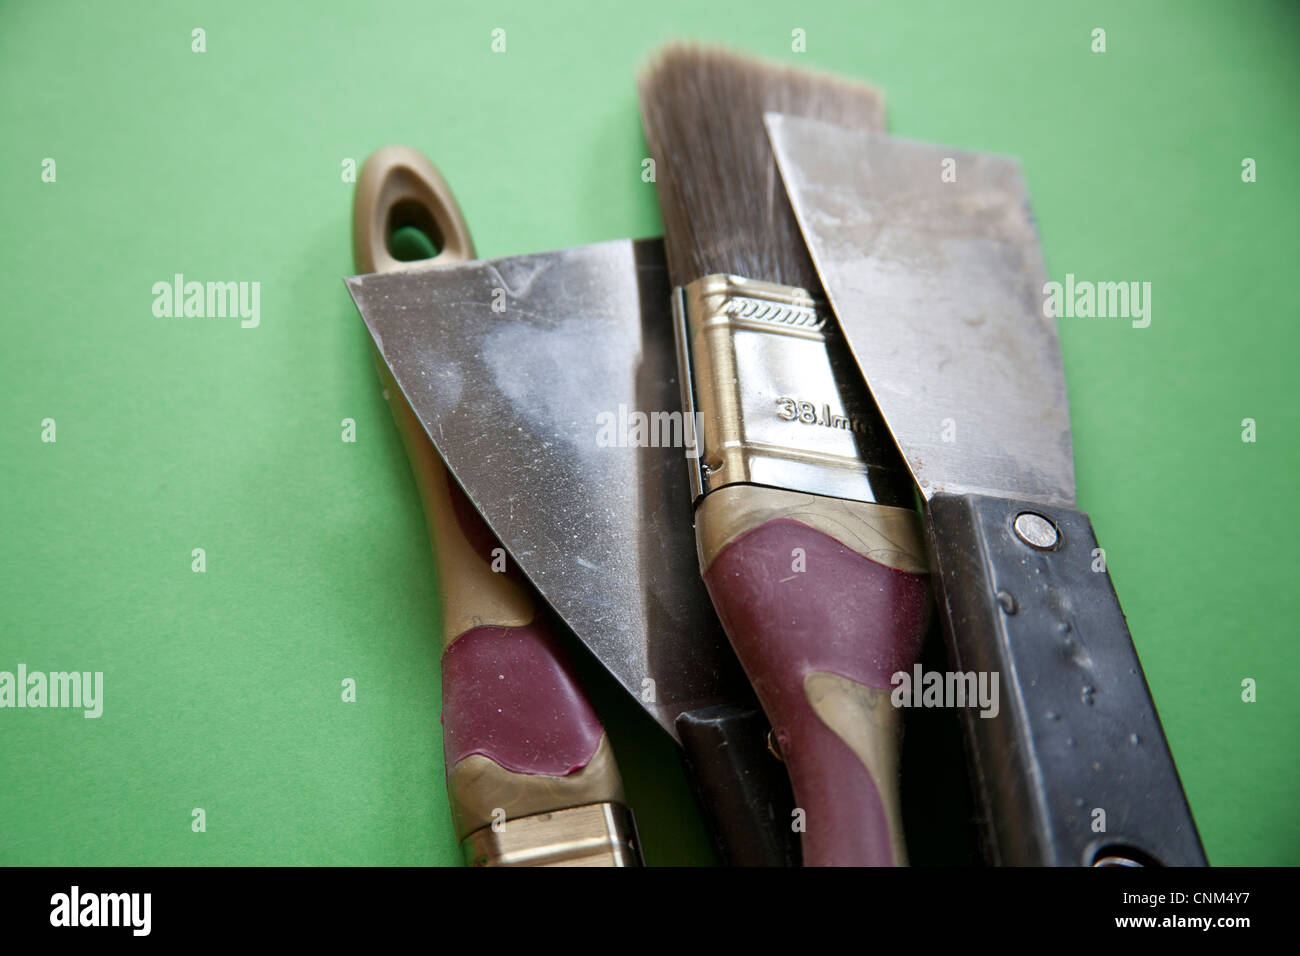 Brochas de pintura y raspadores utilizados para decorar Foto de stock